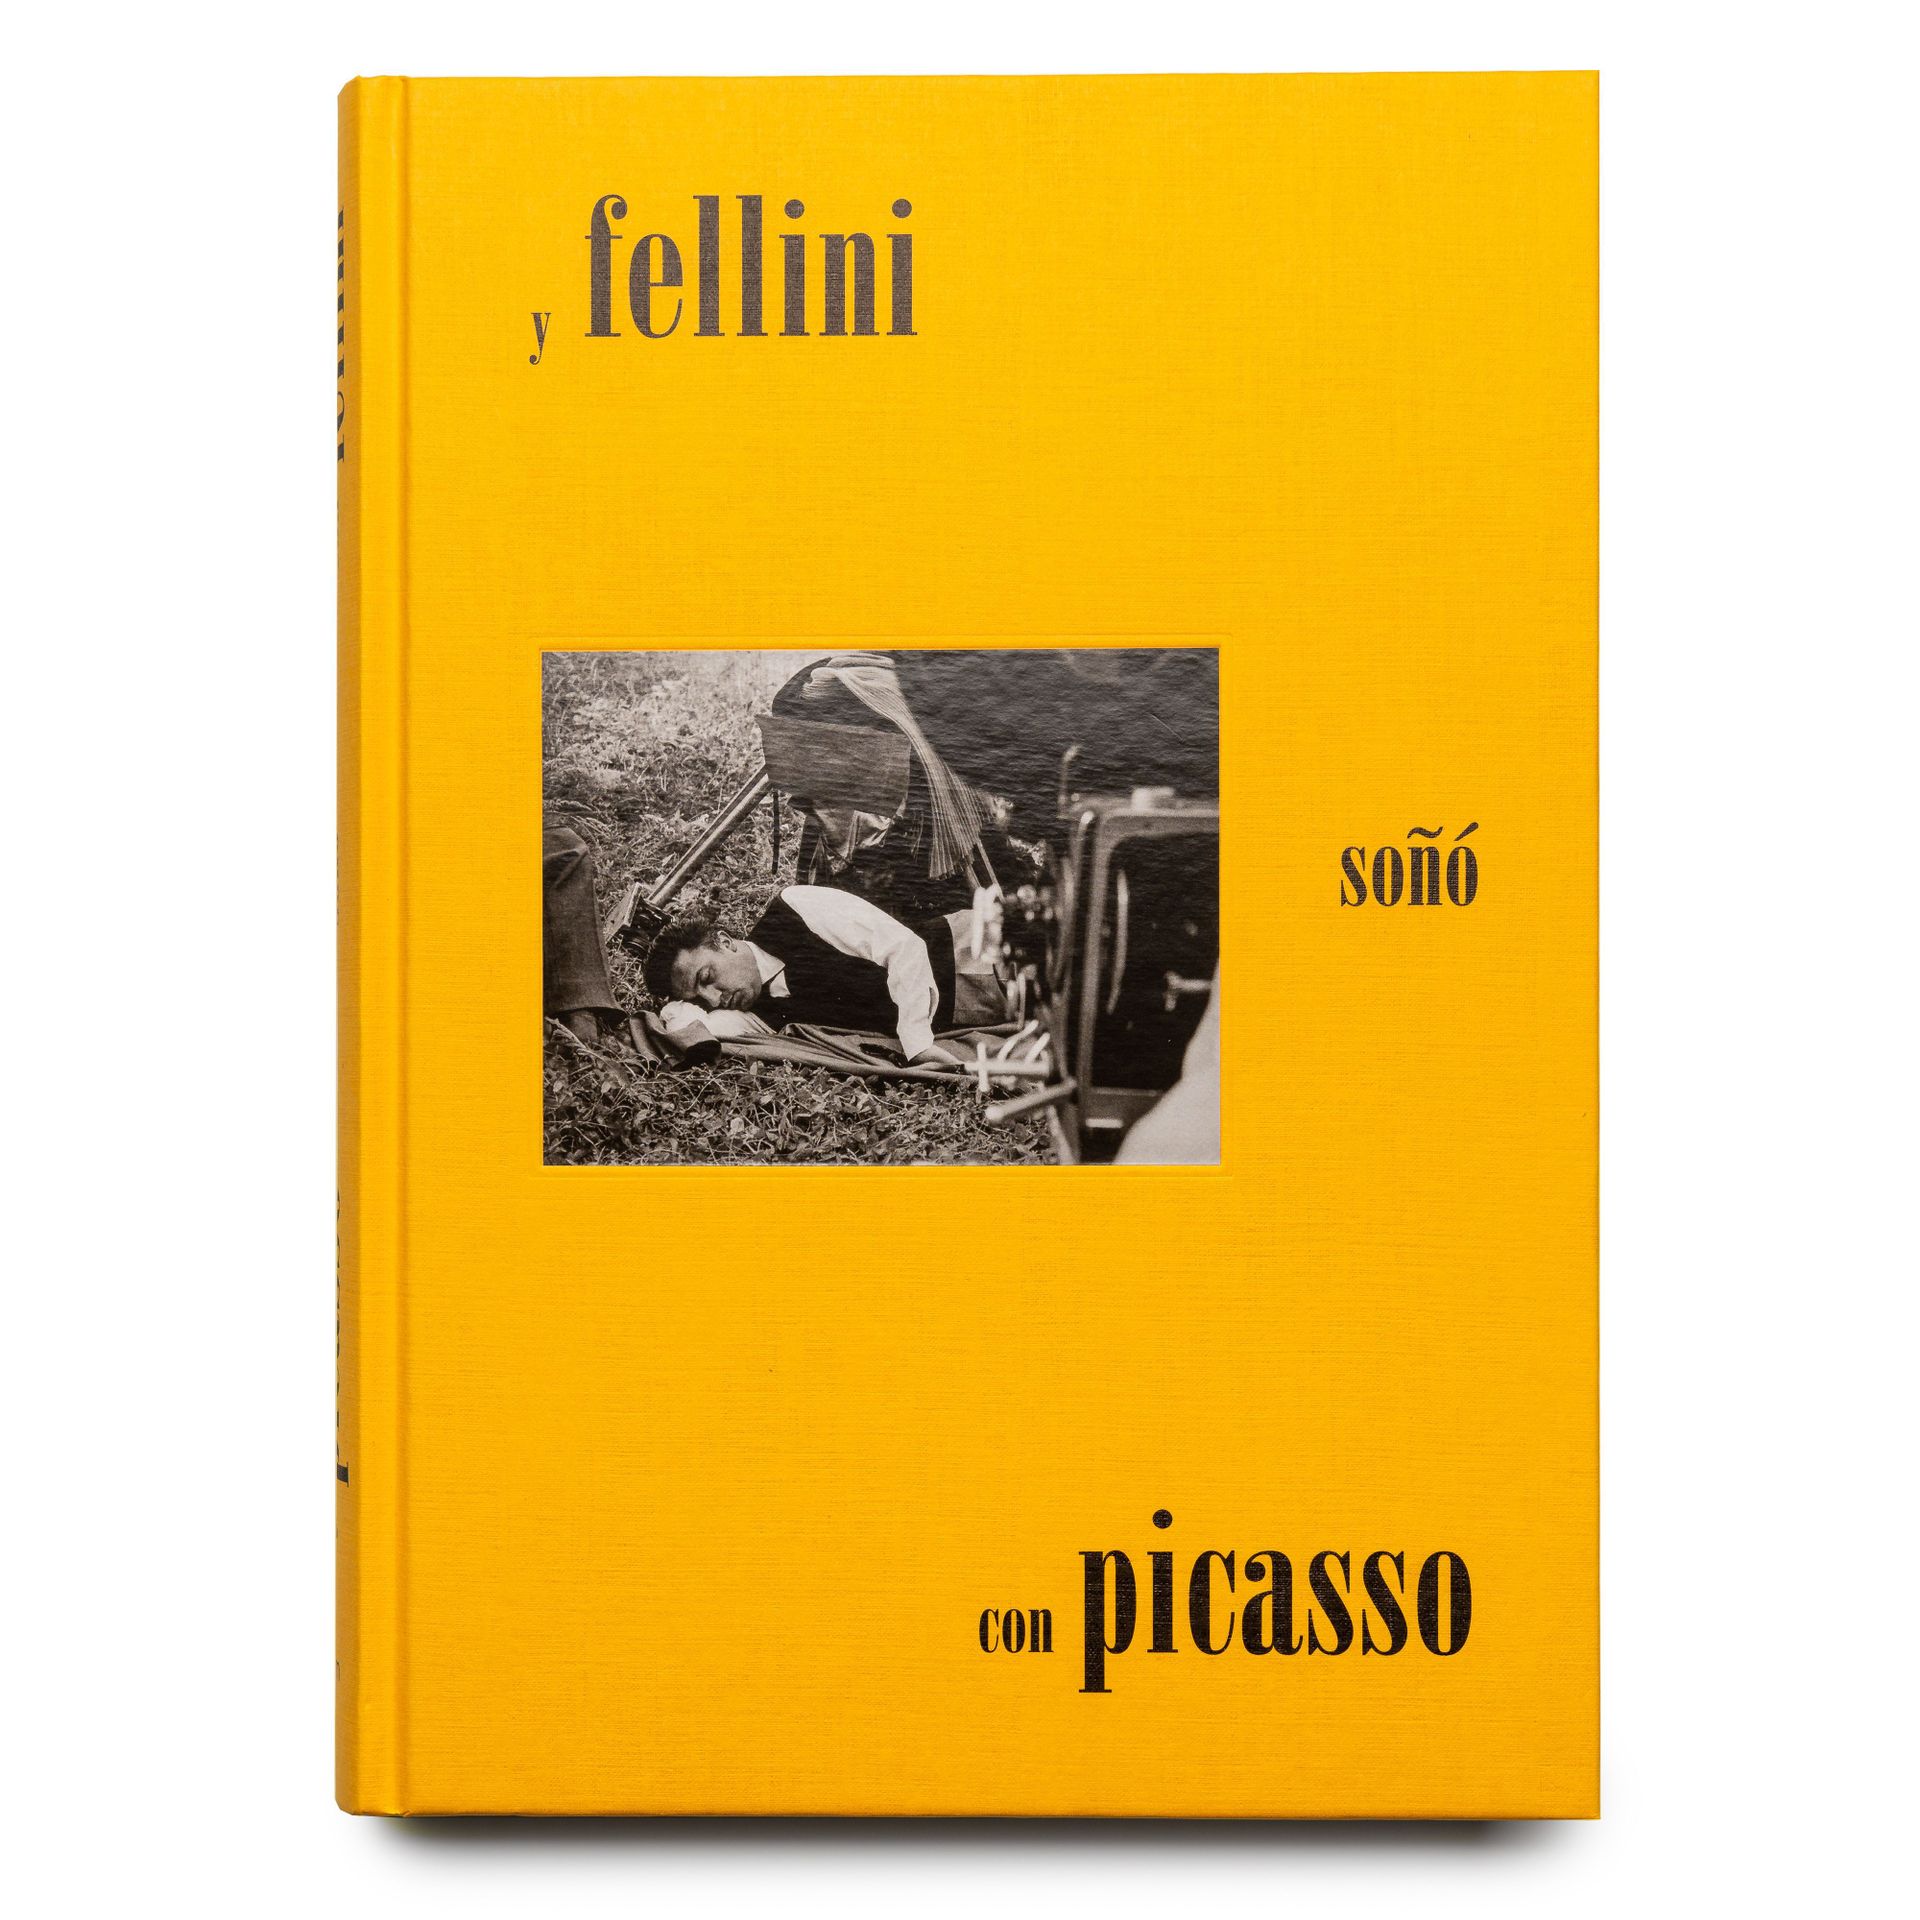 2018_Picasso. Fellini-1